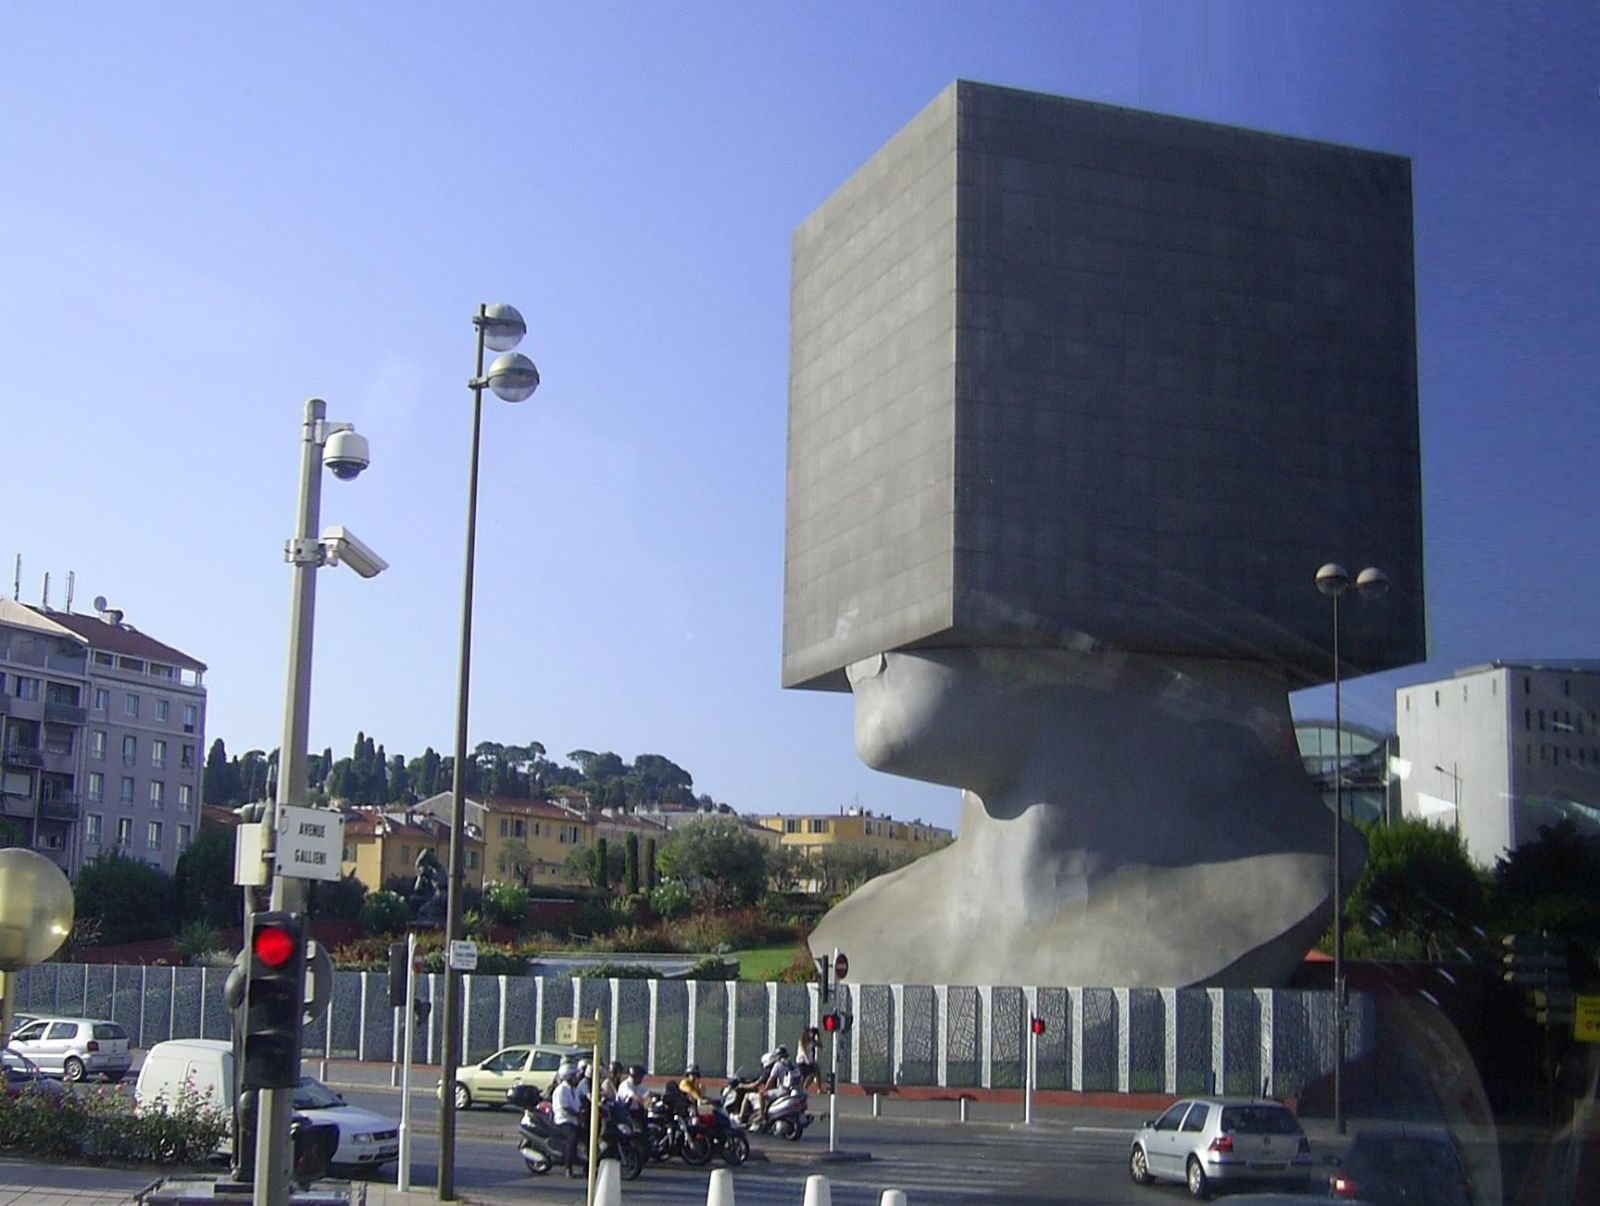 A unique example of modern architecture near Lake Lugano